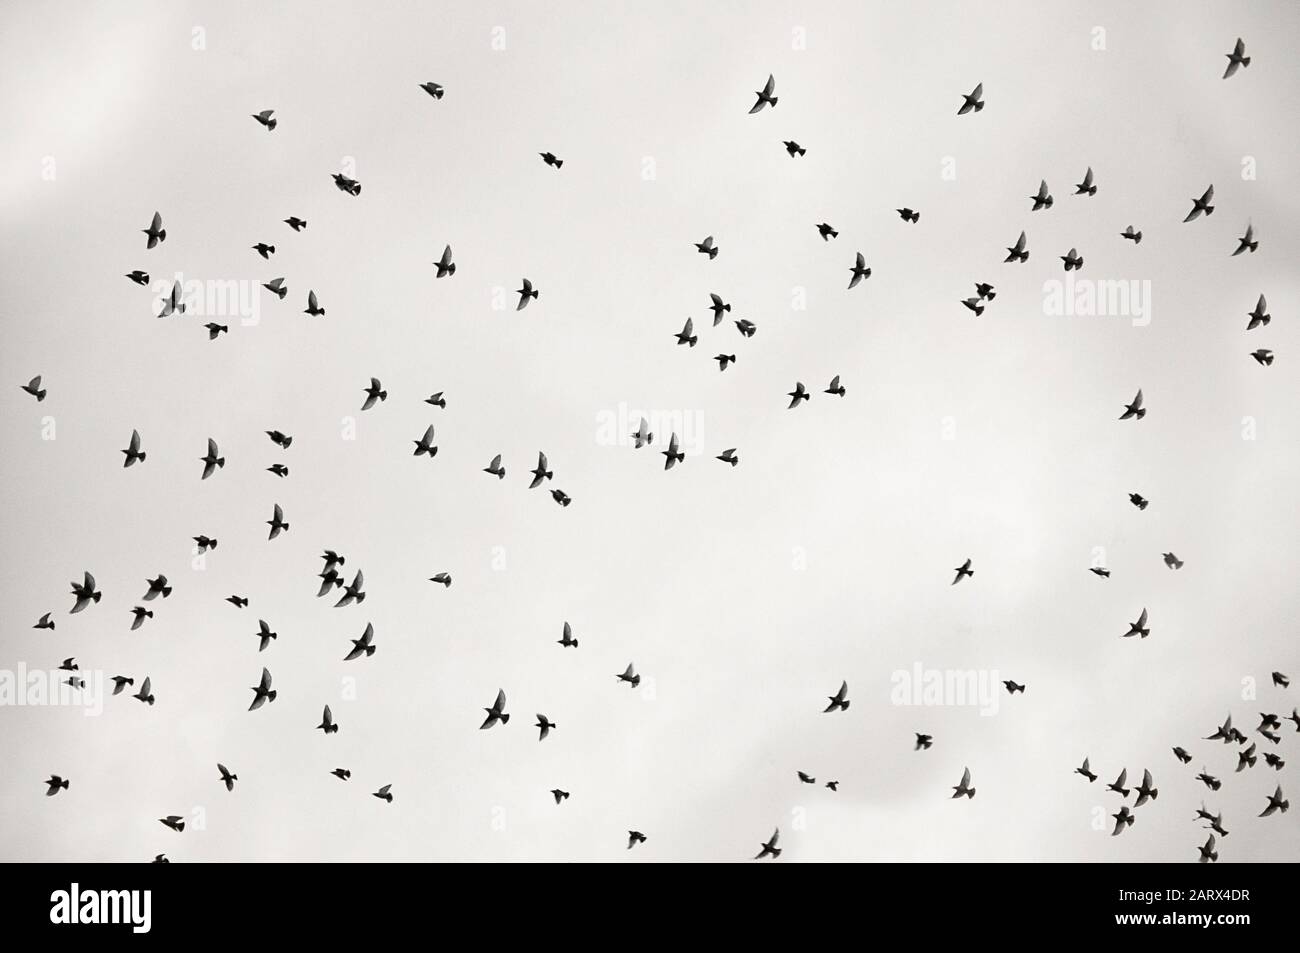 Zoom migratory birds flying swarm monochrome by jziprian Stock Photo